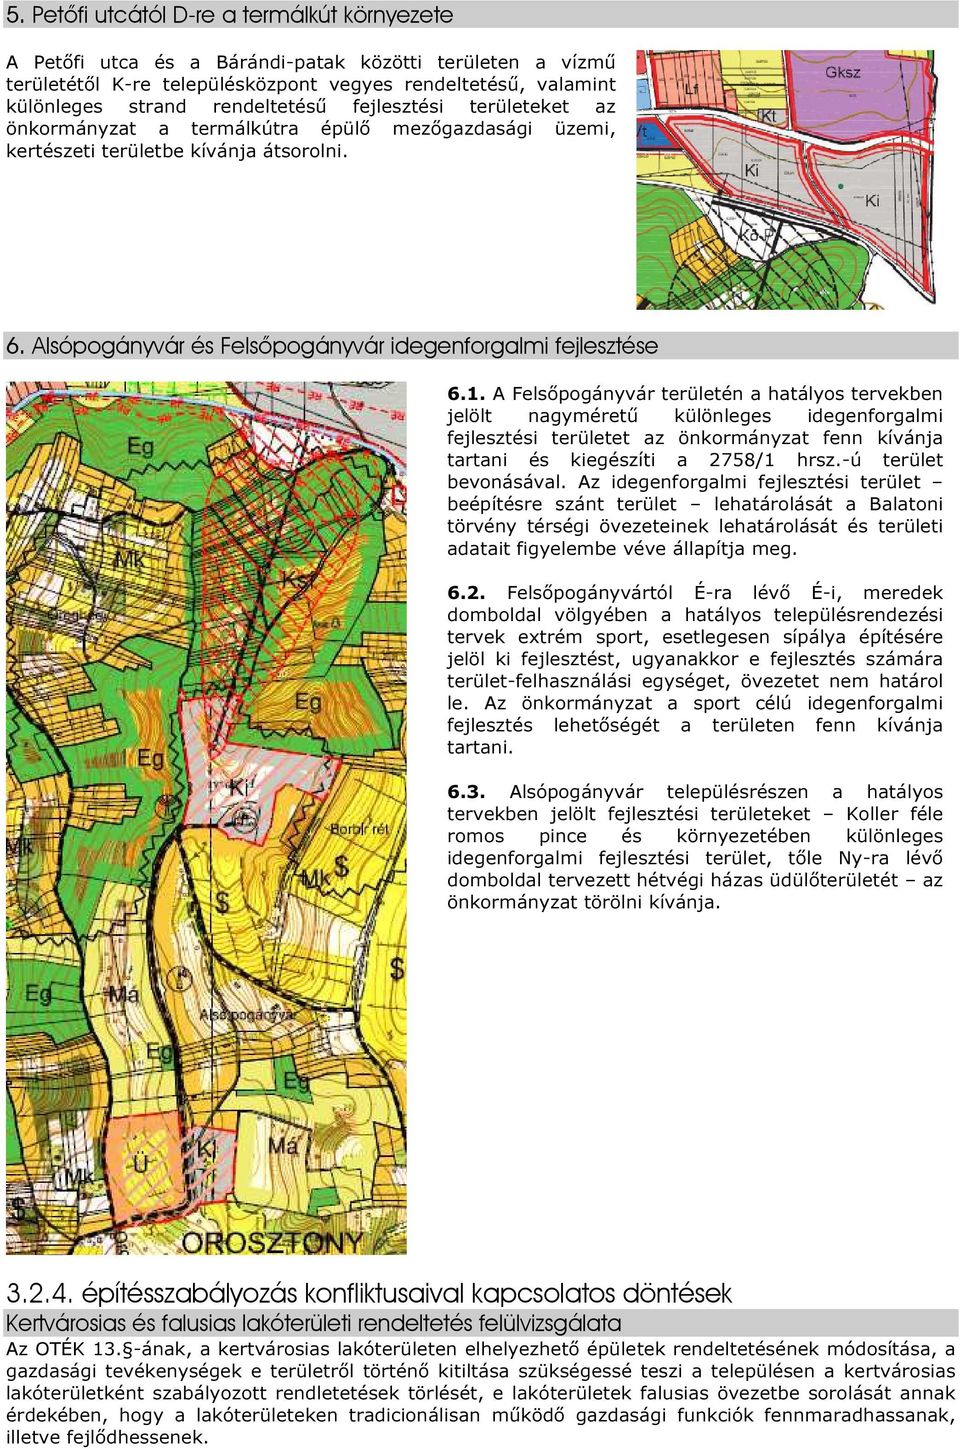 A Felsőpogányvár területén a hatályos tervekben jelölt nagyméretű különleges idegenforgalmi fejlesztési területet az önkormányzat fenn kívánja tartani és kiegészíti a 2758/1 hrsz.